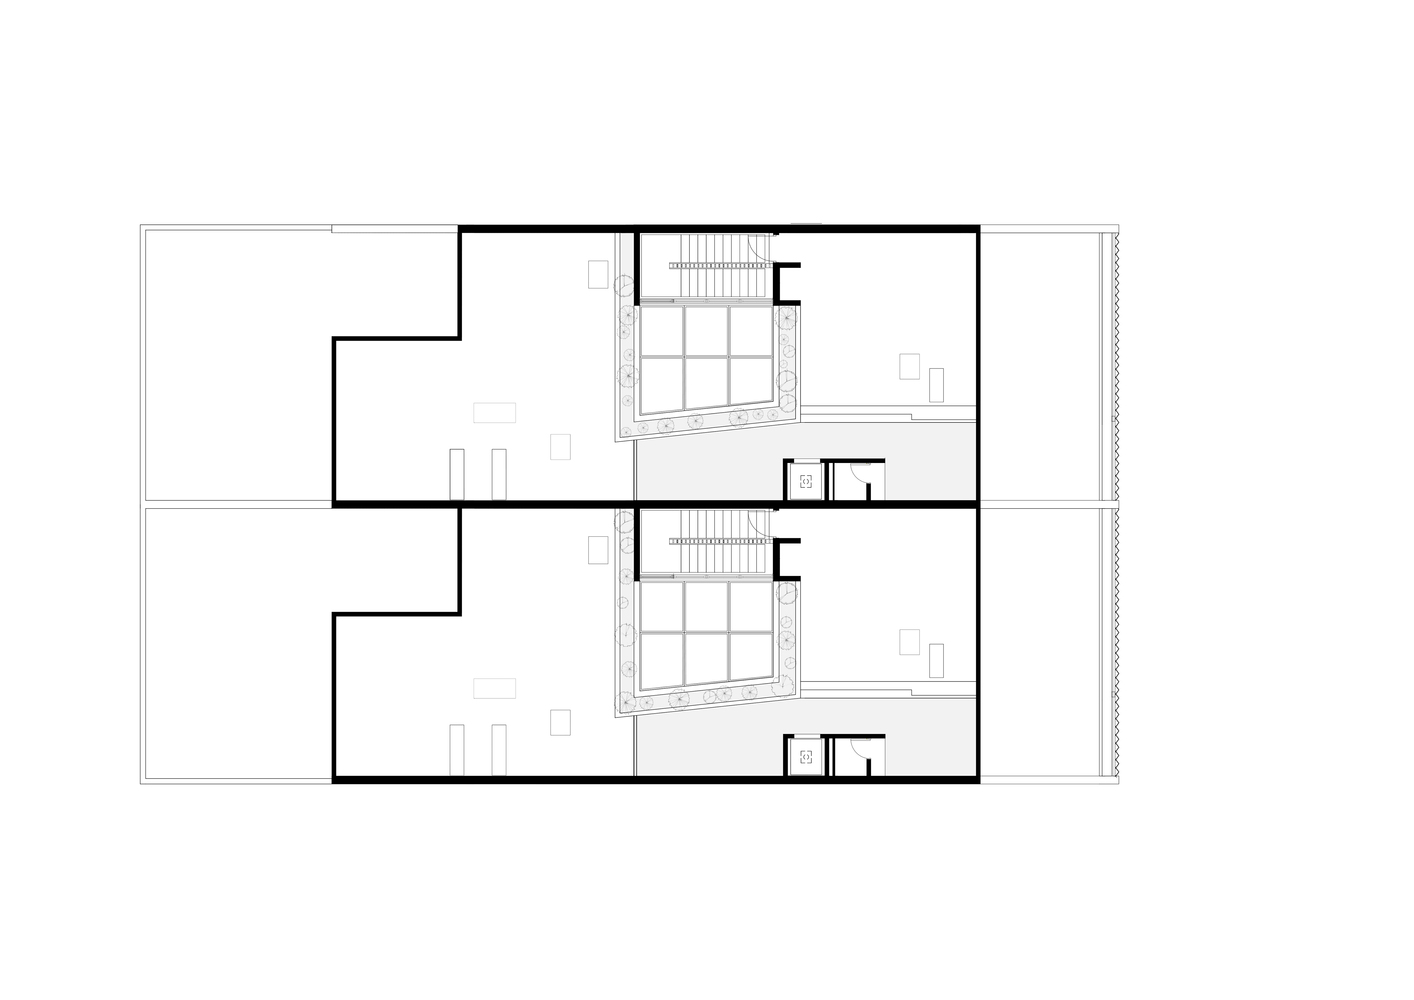 YDR estudio,別墅設計案例,別墅設計,DEOC Arquitectos,650㎡,原木色+白色,國外別墅設計,別墅設計方案